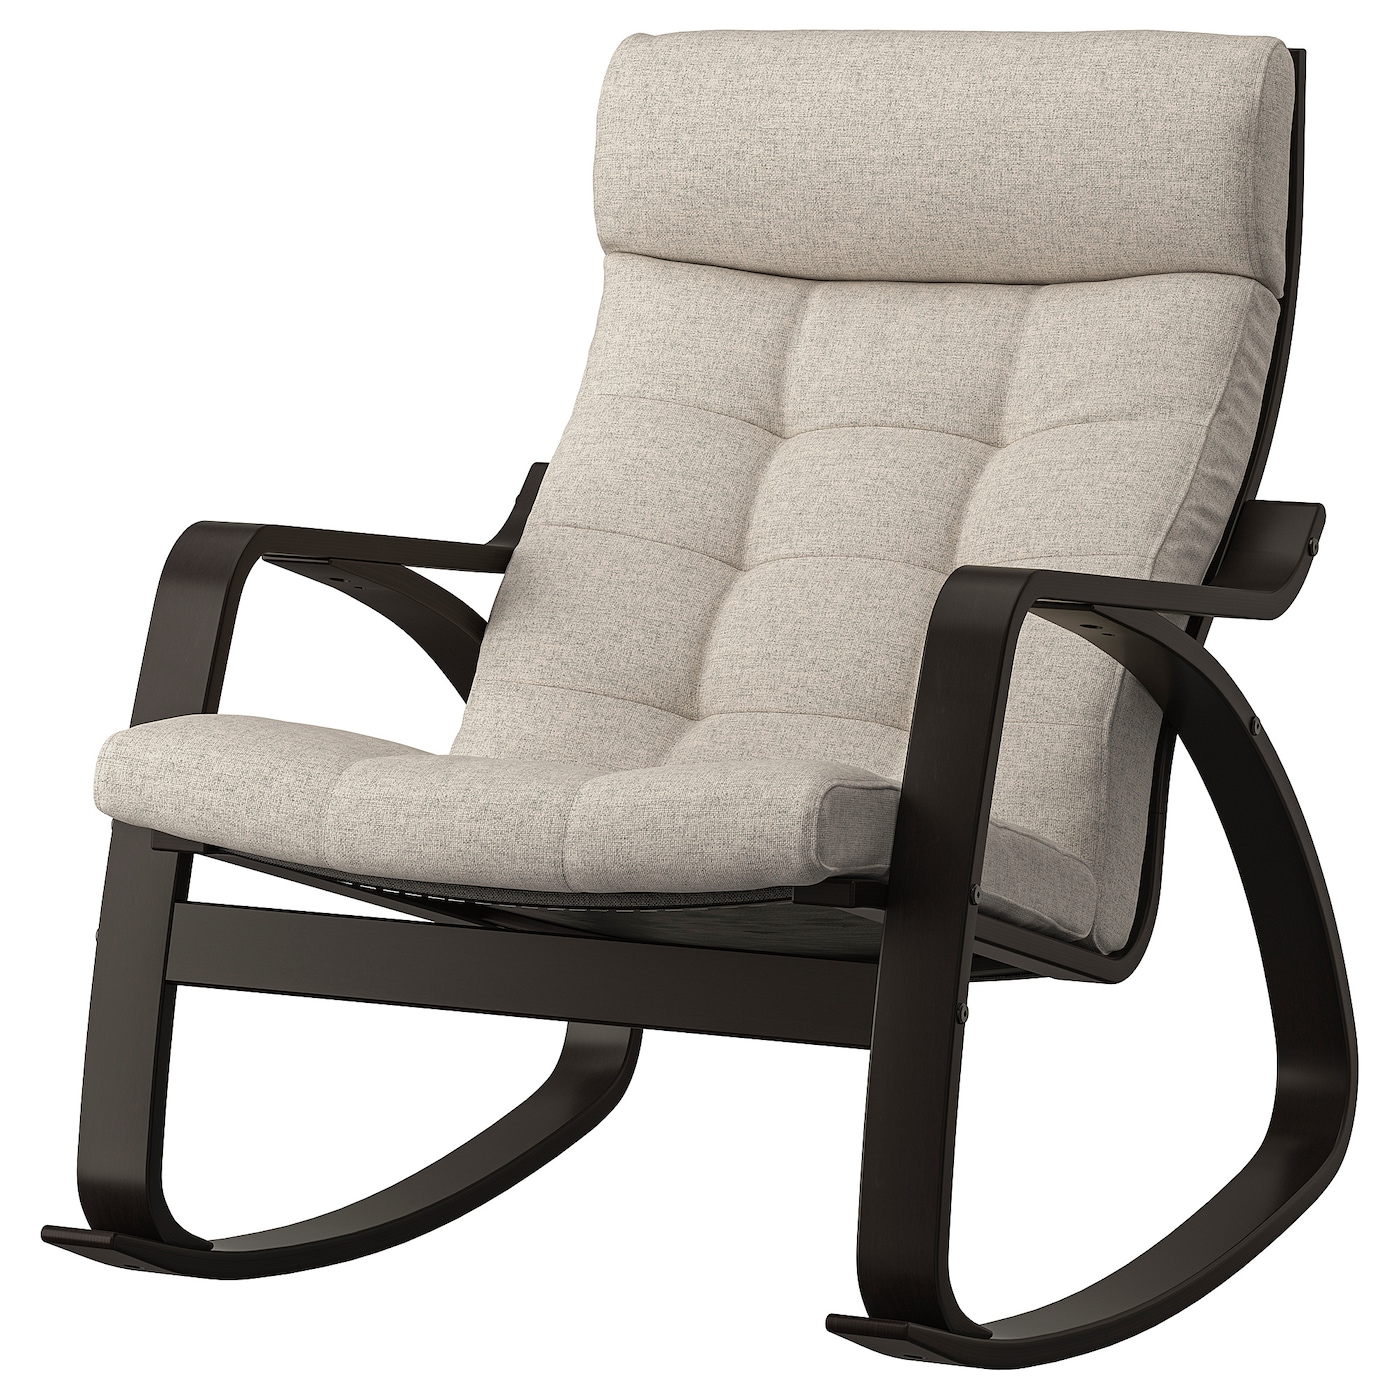 ПОЭНГ Кресло-качалка, черно-коричневый/Гуннаред бежевый POÄNG IKEA электрическое кресло качалка детское умное кресло качалка с дистанционным управлением bluetooth удобная вибрация гипнотическое средство дл